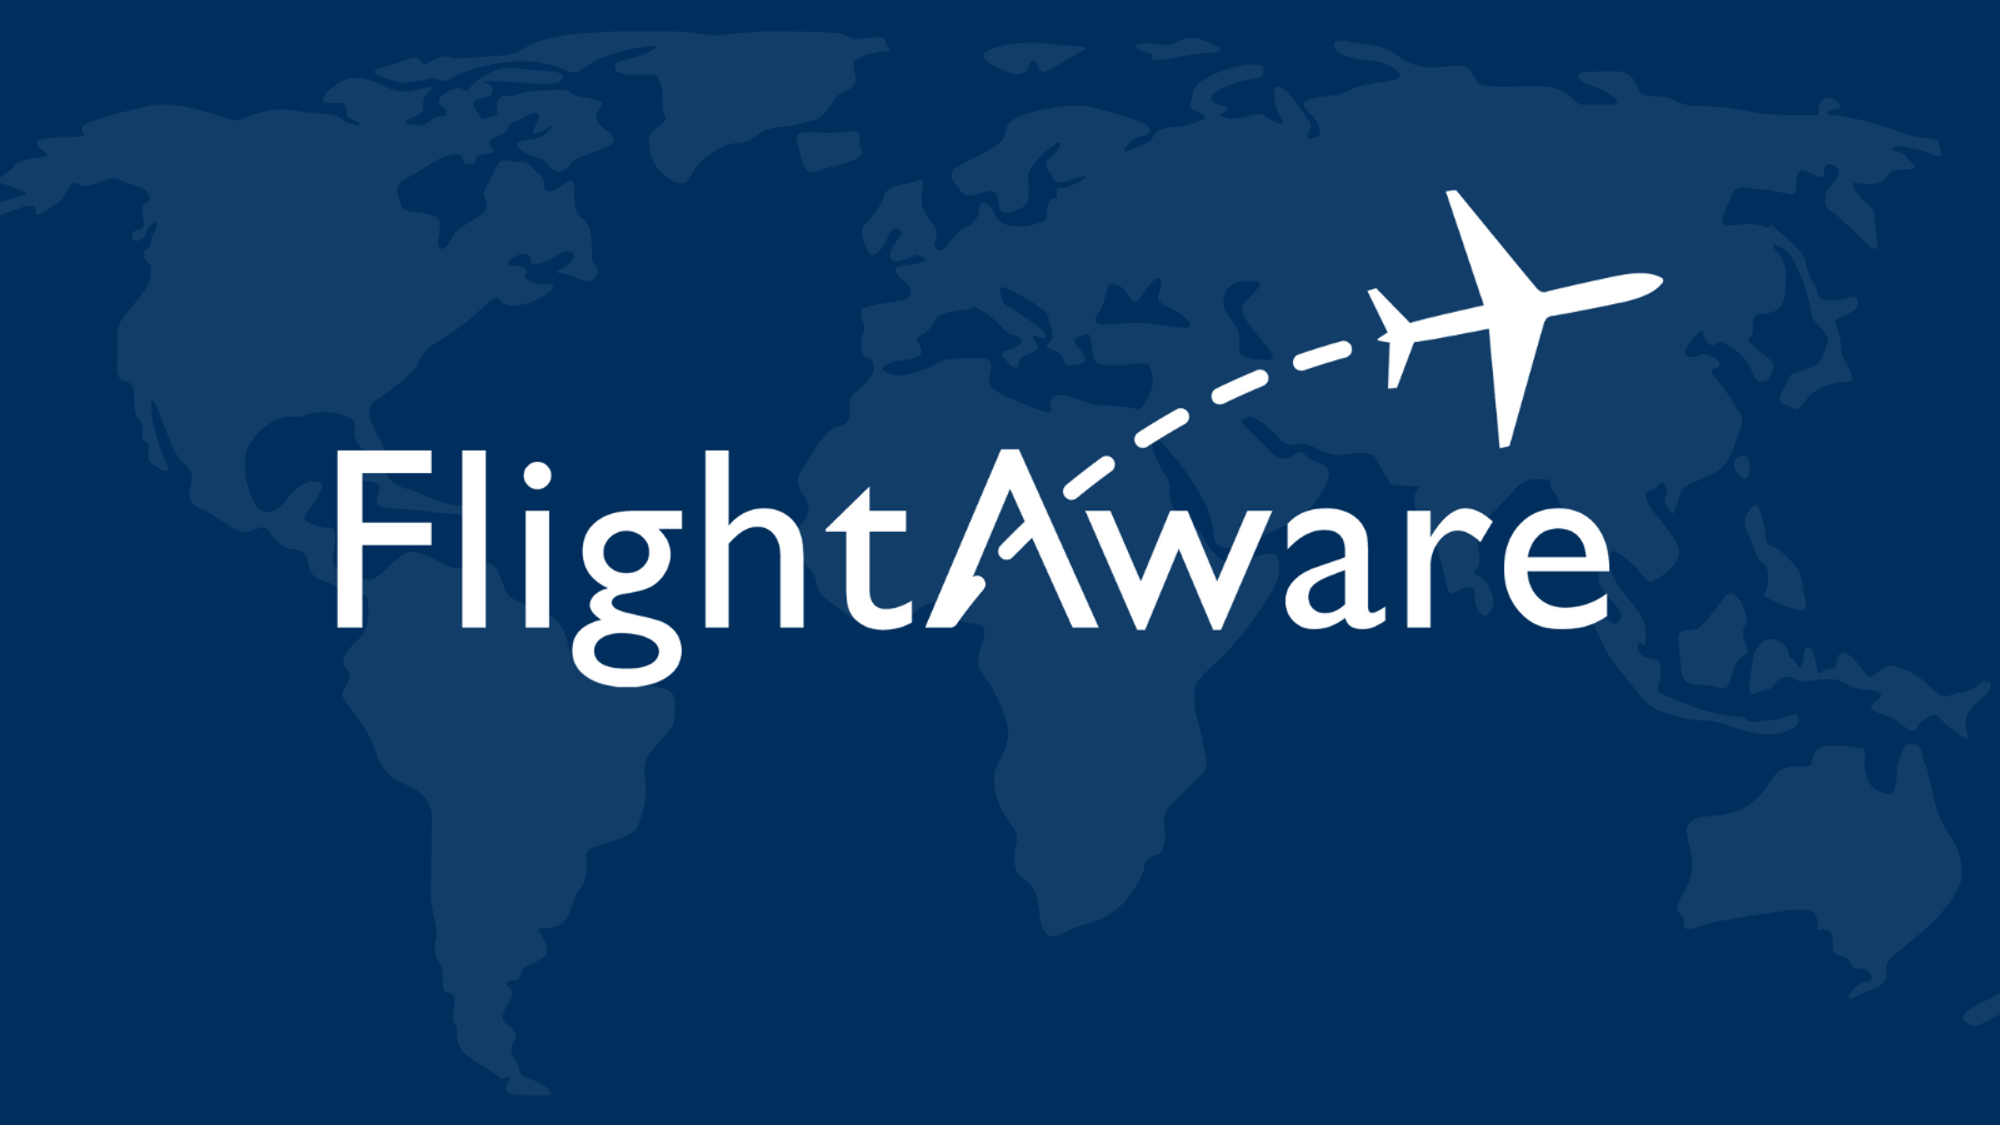 FlightAware - Flight Tracker / Flight Status